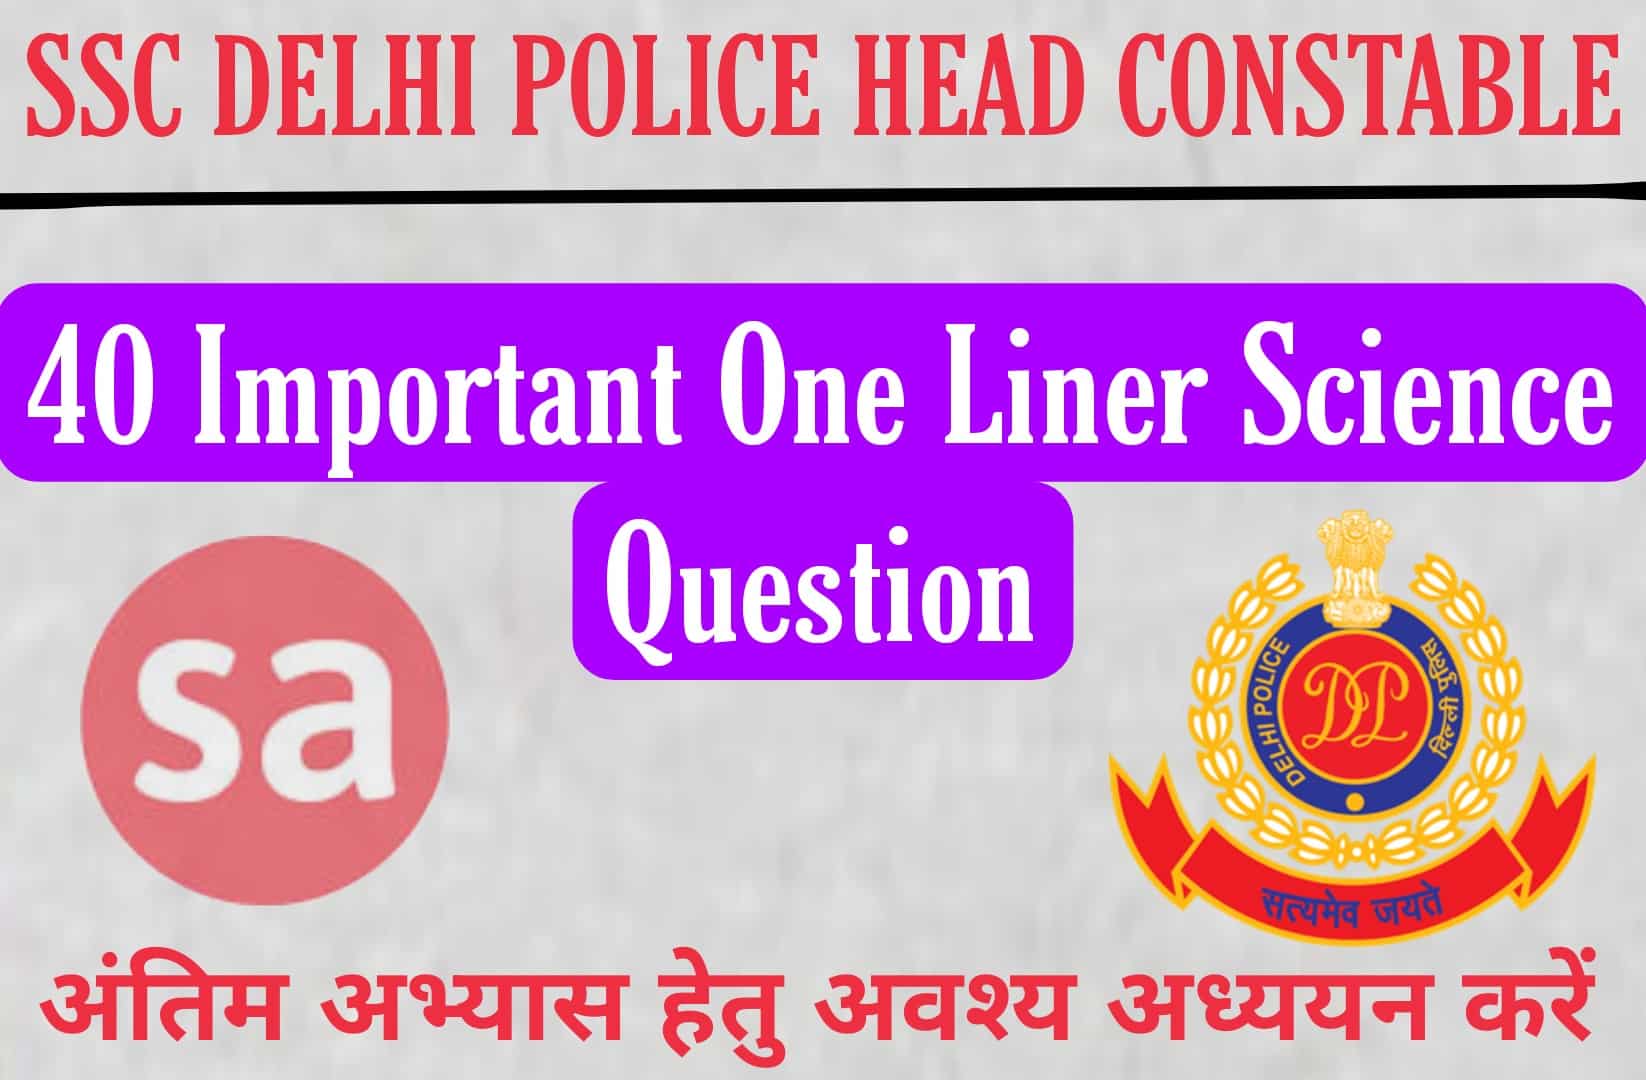 SSC Delhi Police Head Constable Exam 2022 | सामान्य विज्ञान के 40 महत्वपूर्ण वन लाइनर प्रश्न, परीक्षा में अवश्य पढ़कर जाये